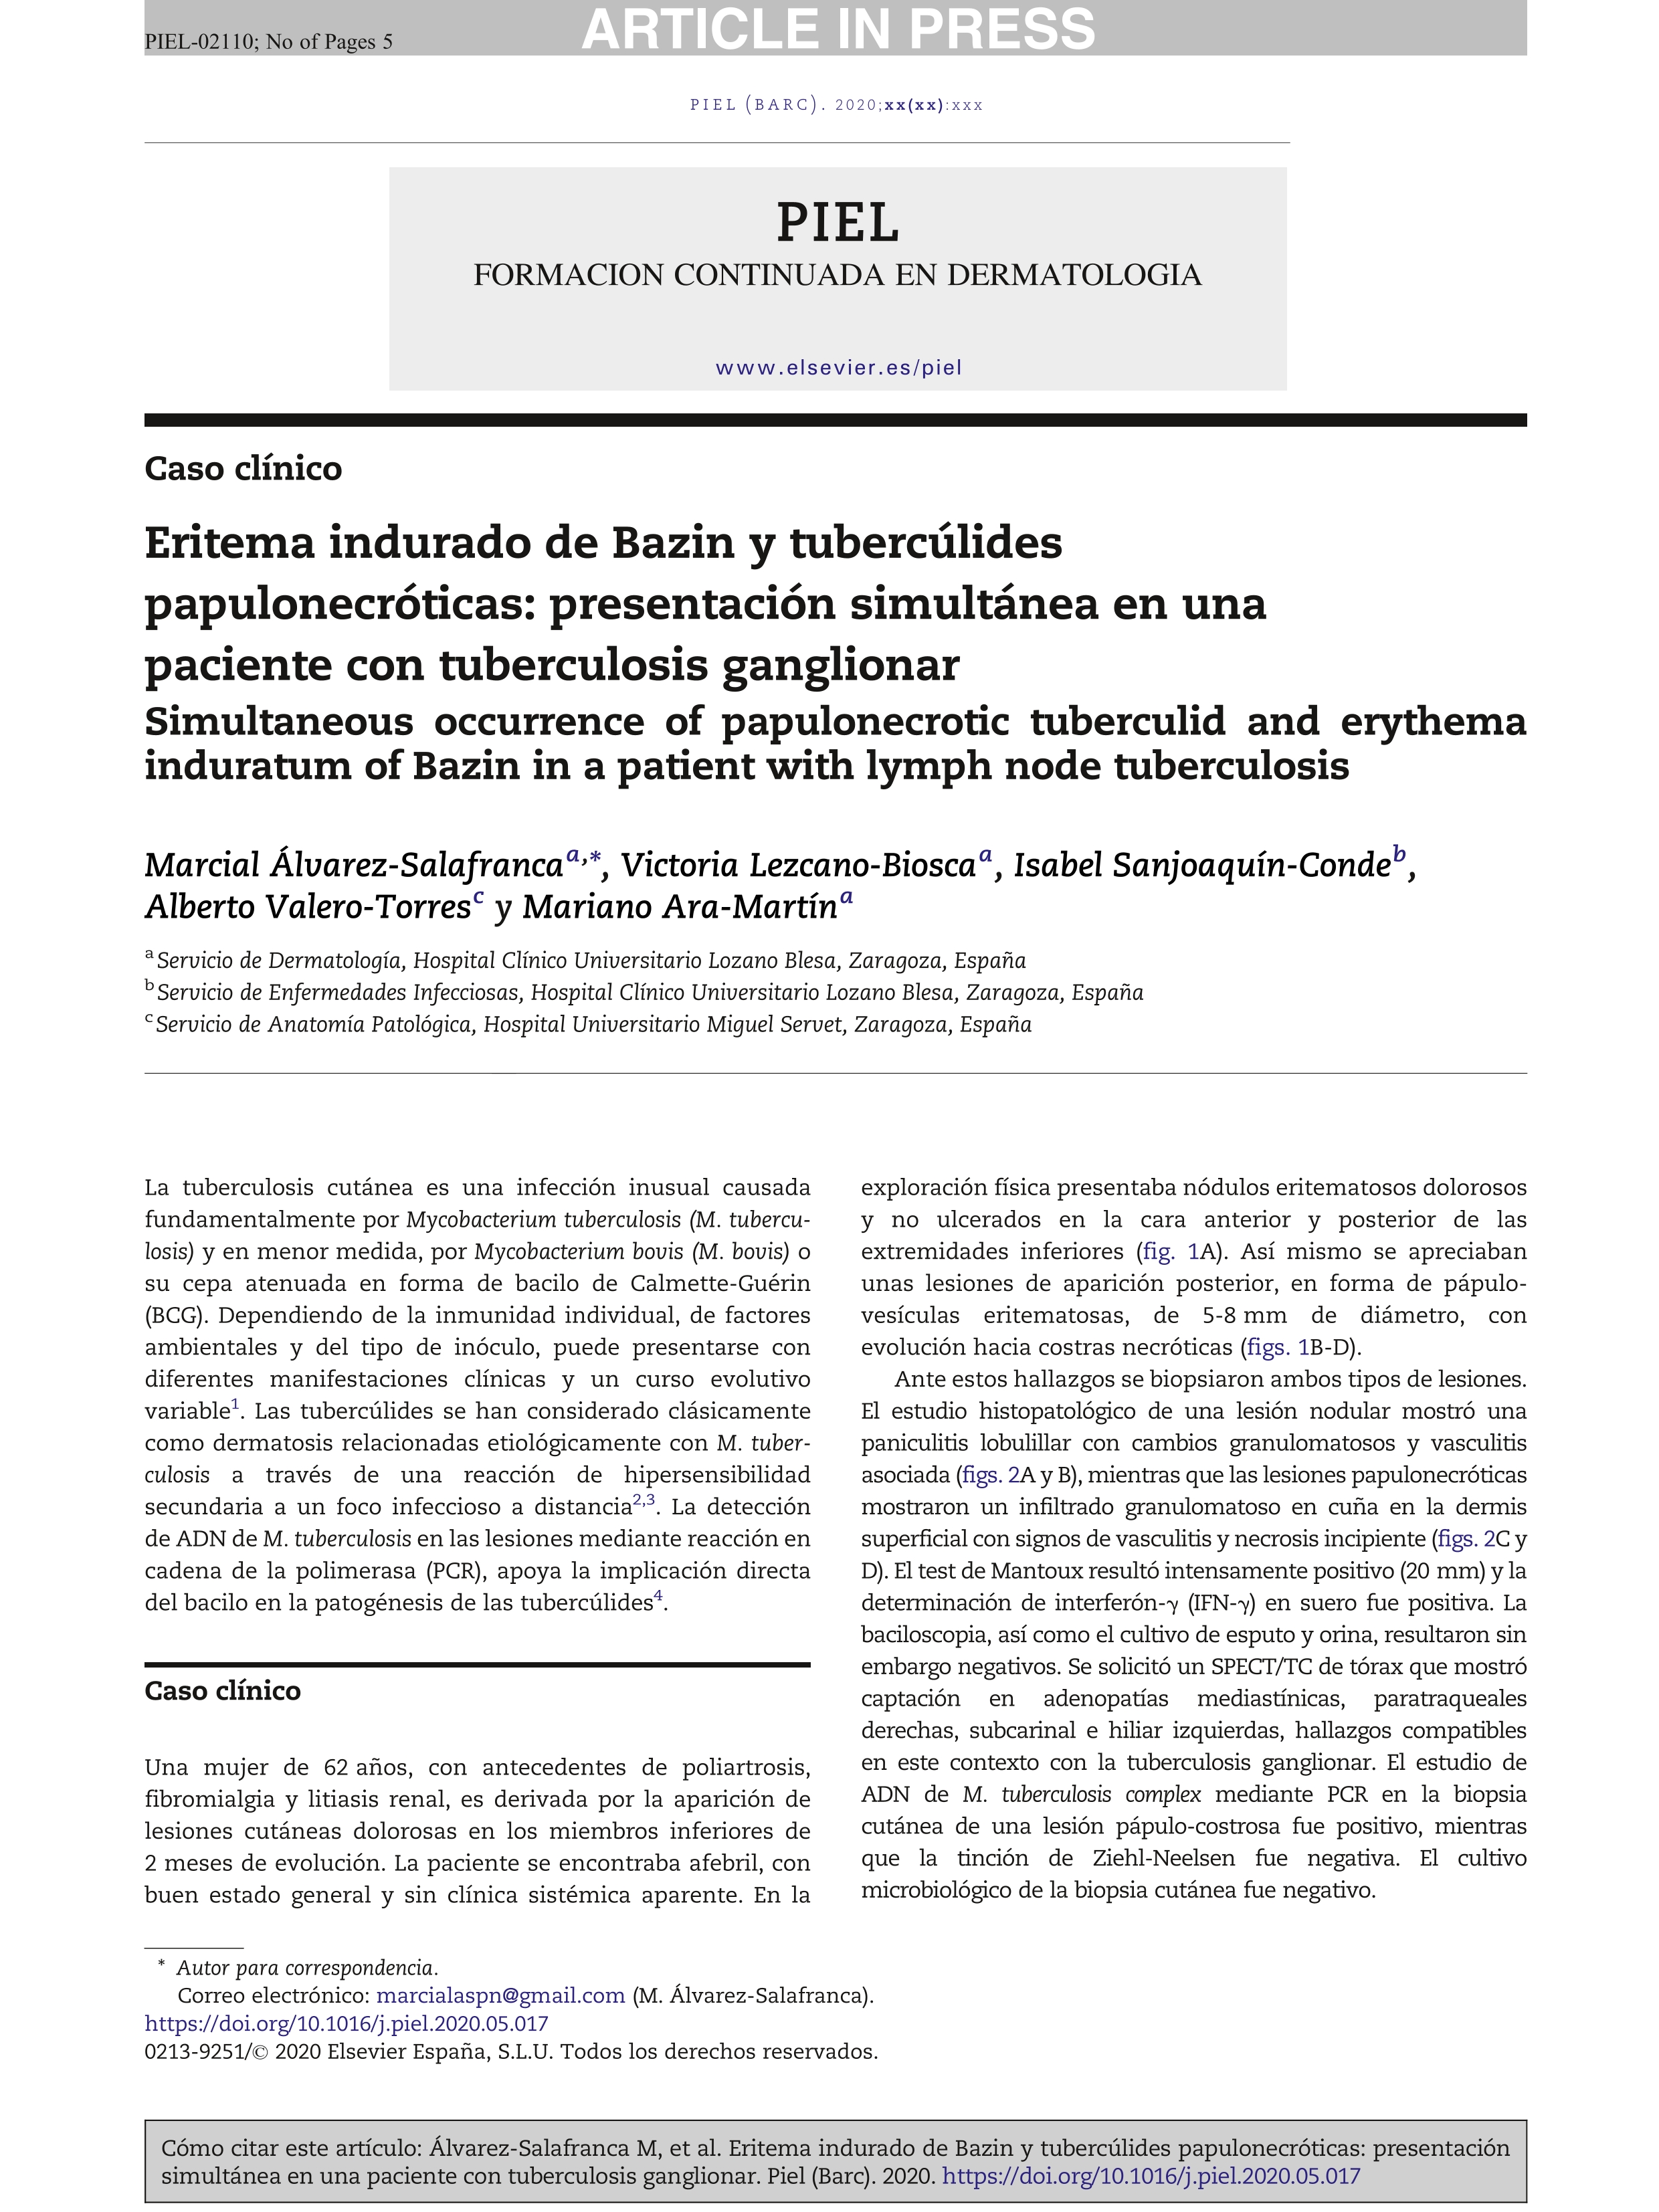 Eritema indurado de Bazin y tubercúlides papulonecróticas: presentación simultánea en una paciente con tuberculosis ganglionar